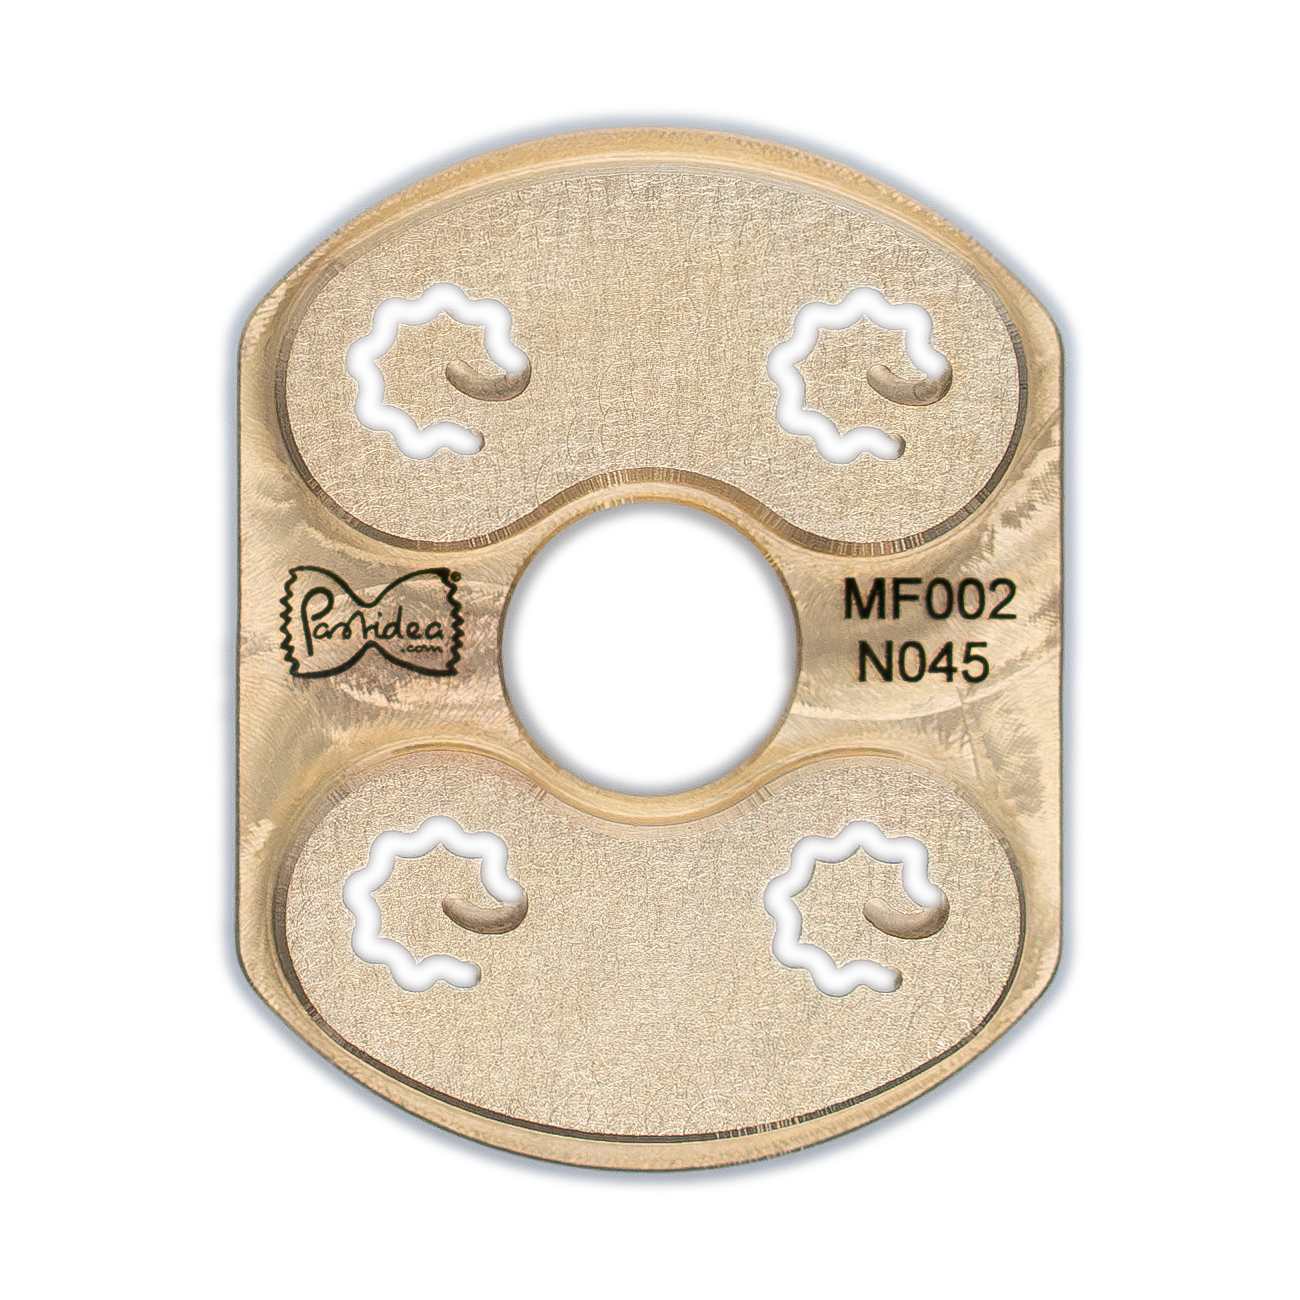 inserto de pasta en riccioli de bronce de 4 mm para philips avance / serie 7000 (se requiere soporte de inserto vertical) (copia)